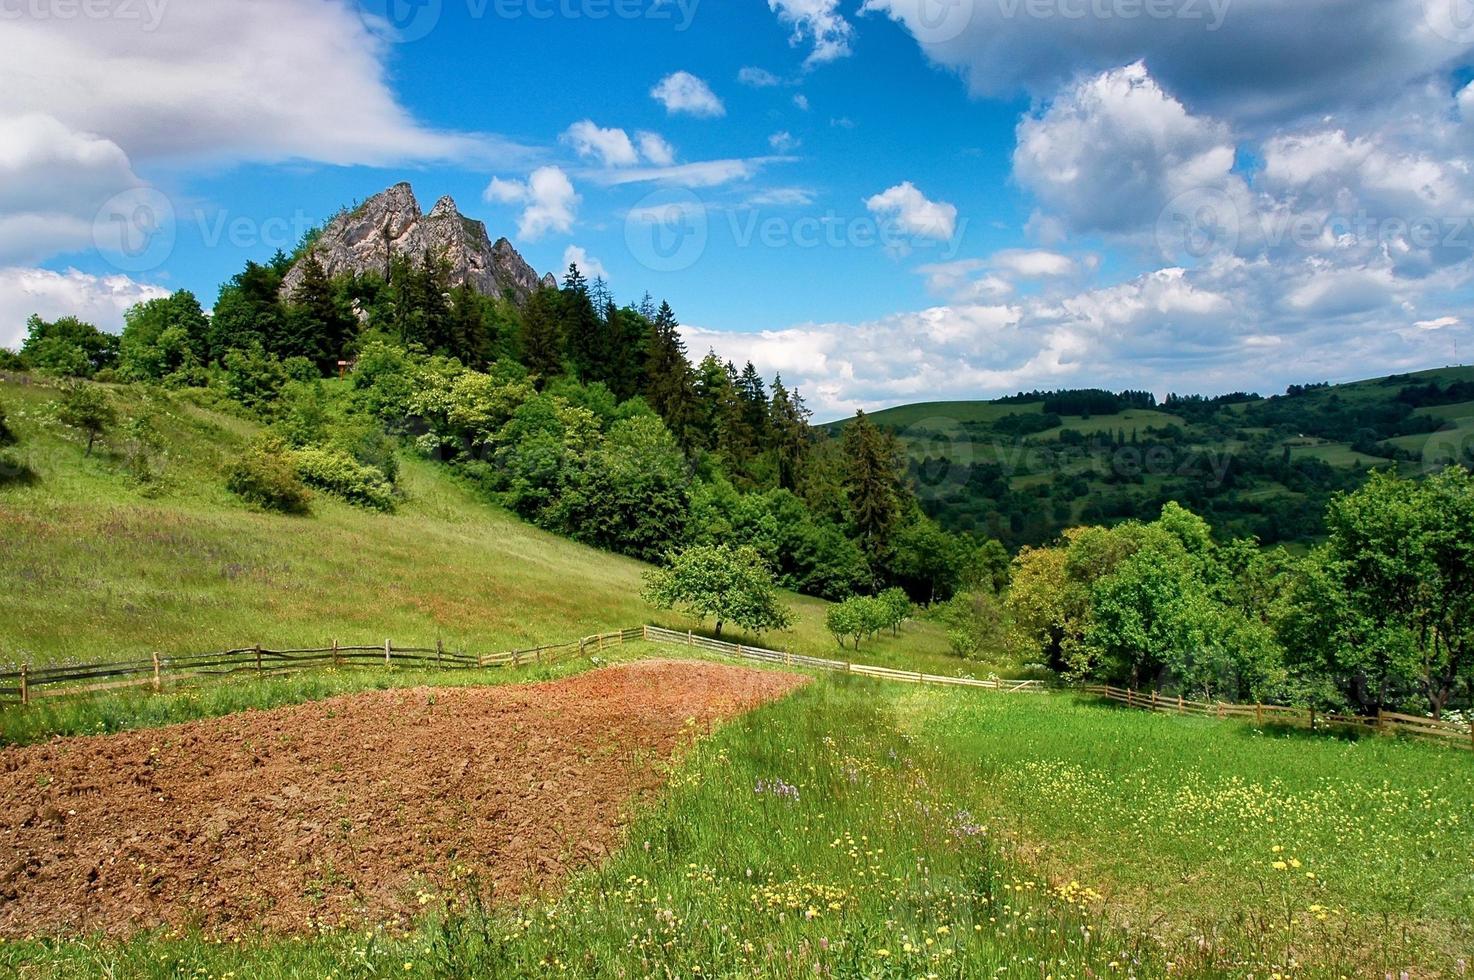 montagnes de slovaquie photo